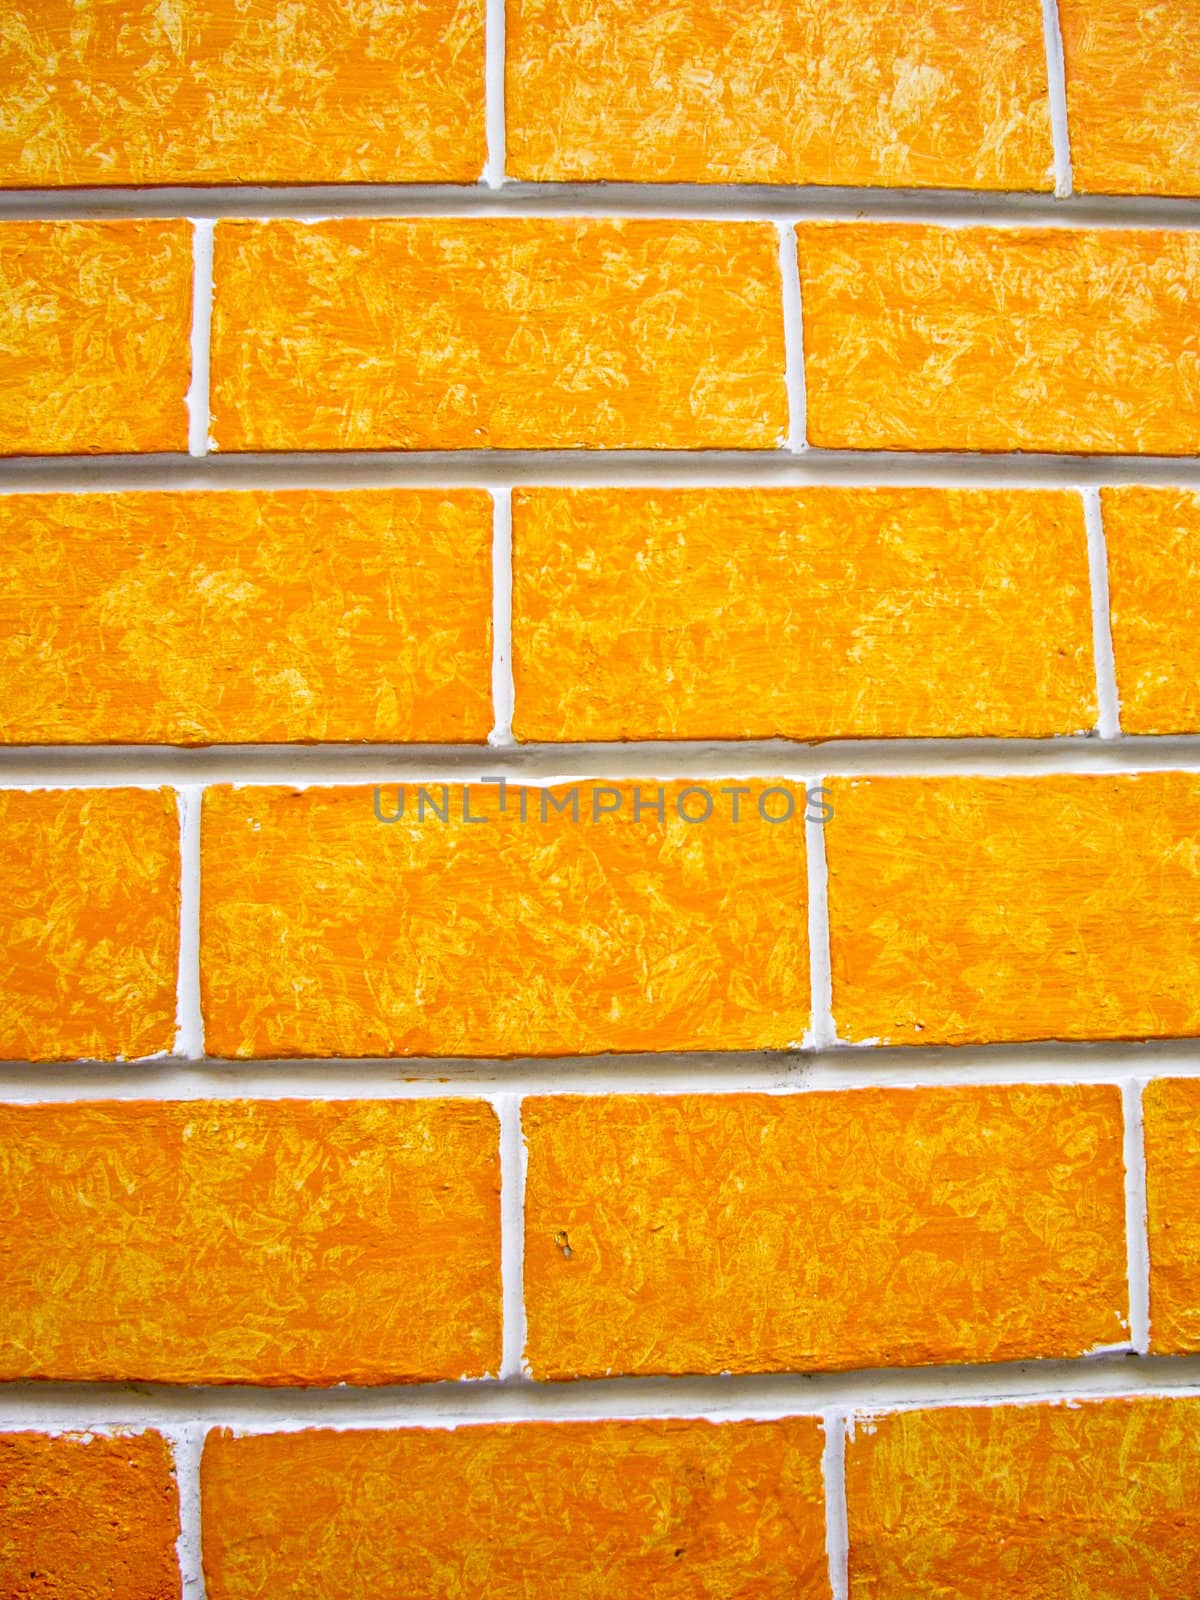 Orange Walls by emattil